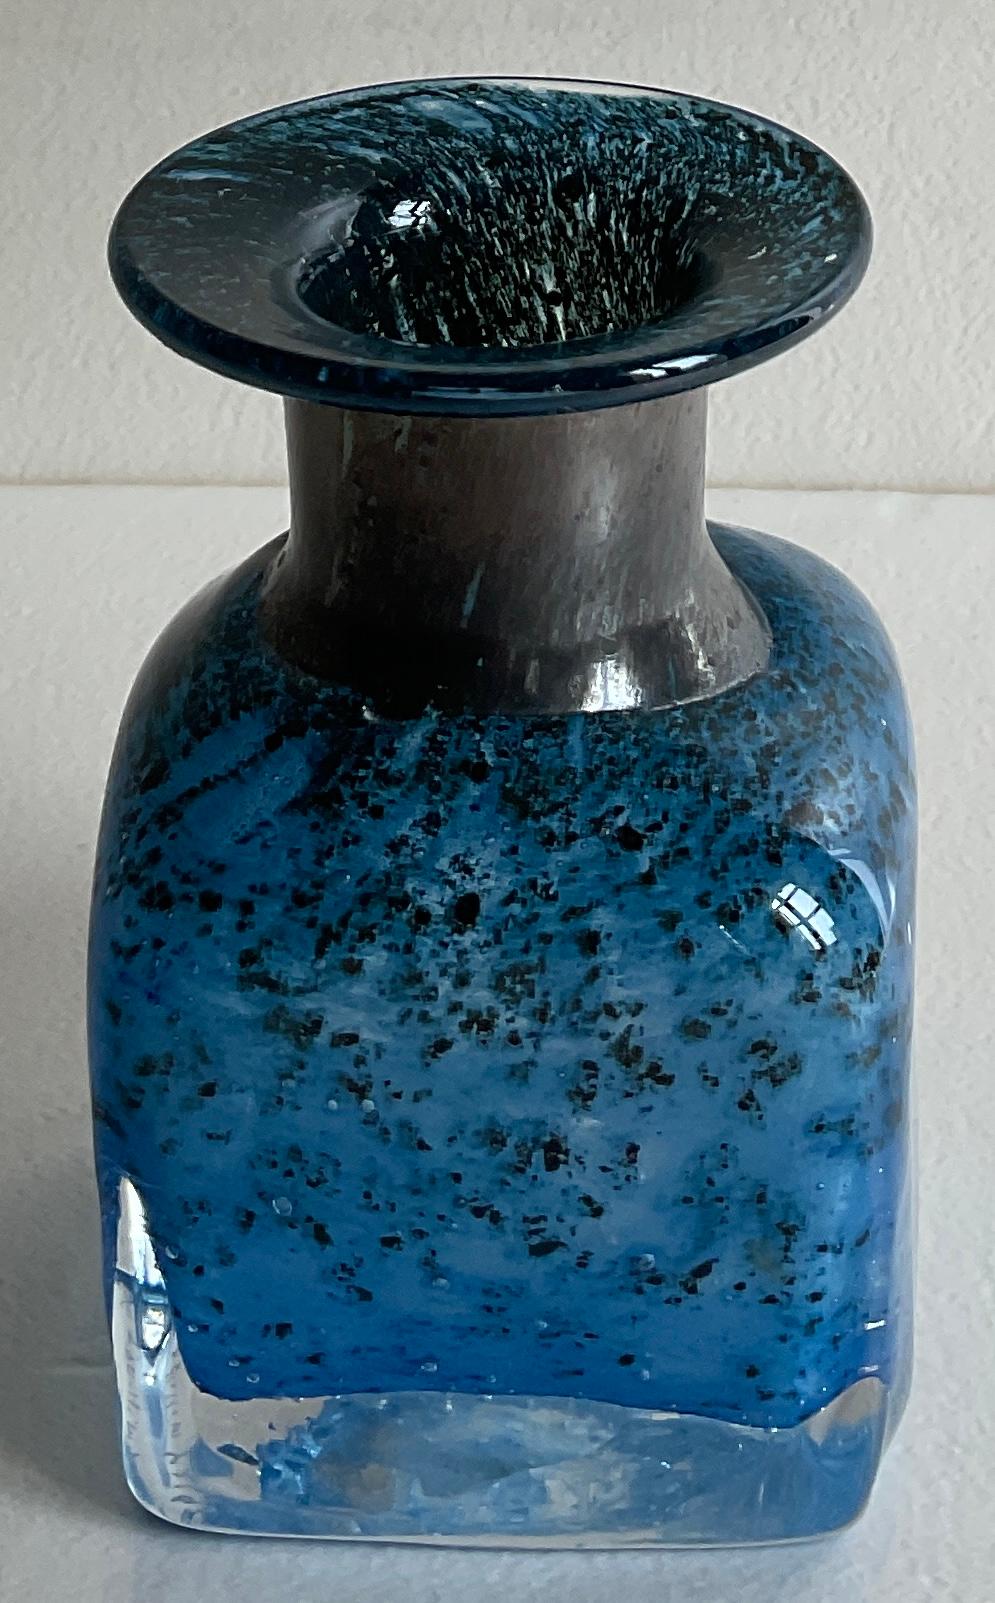 Eine schöne Stielvase aus Murano-Kunstglas. 
Keine Beschädigung, kontrollierte Blaseneinschlüsse und Sommerso-Technik. 
Vollständig von Hand gefertigt.

Auf dem Sockel signiert und nummeriert.

Maße: 2 3/4